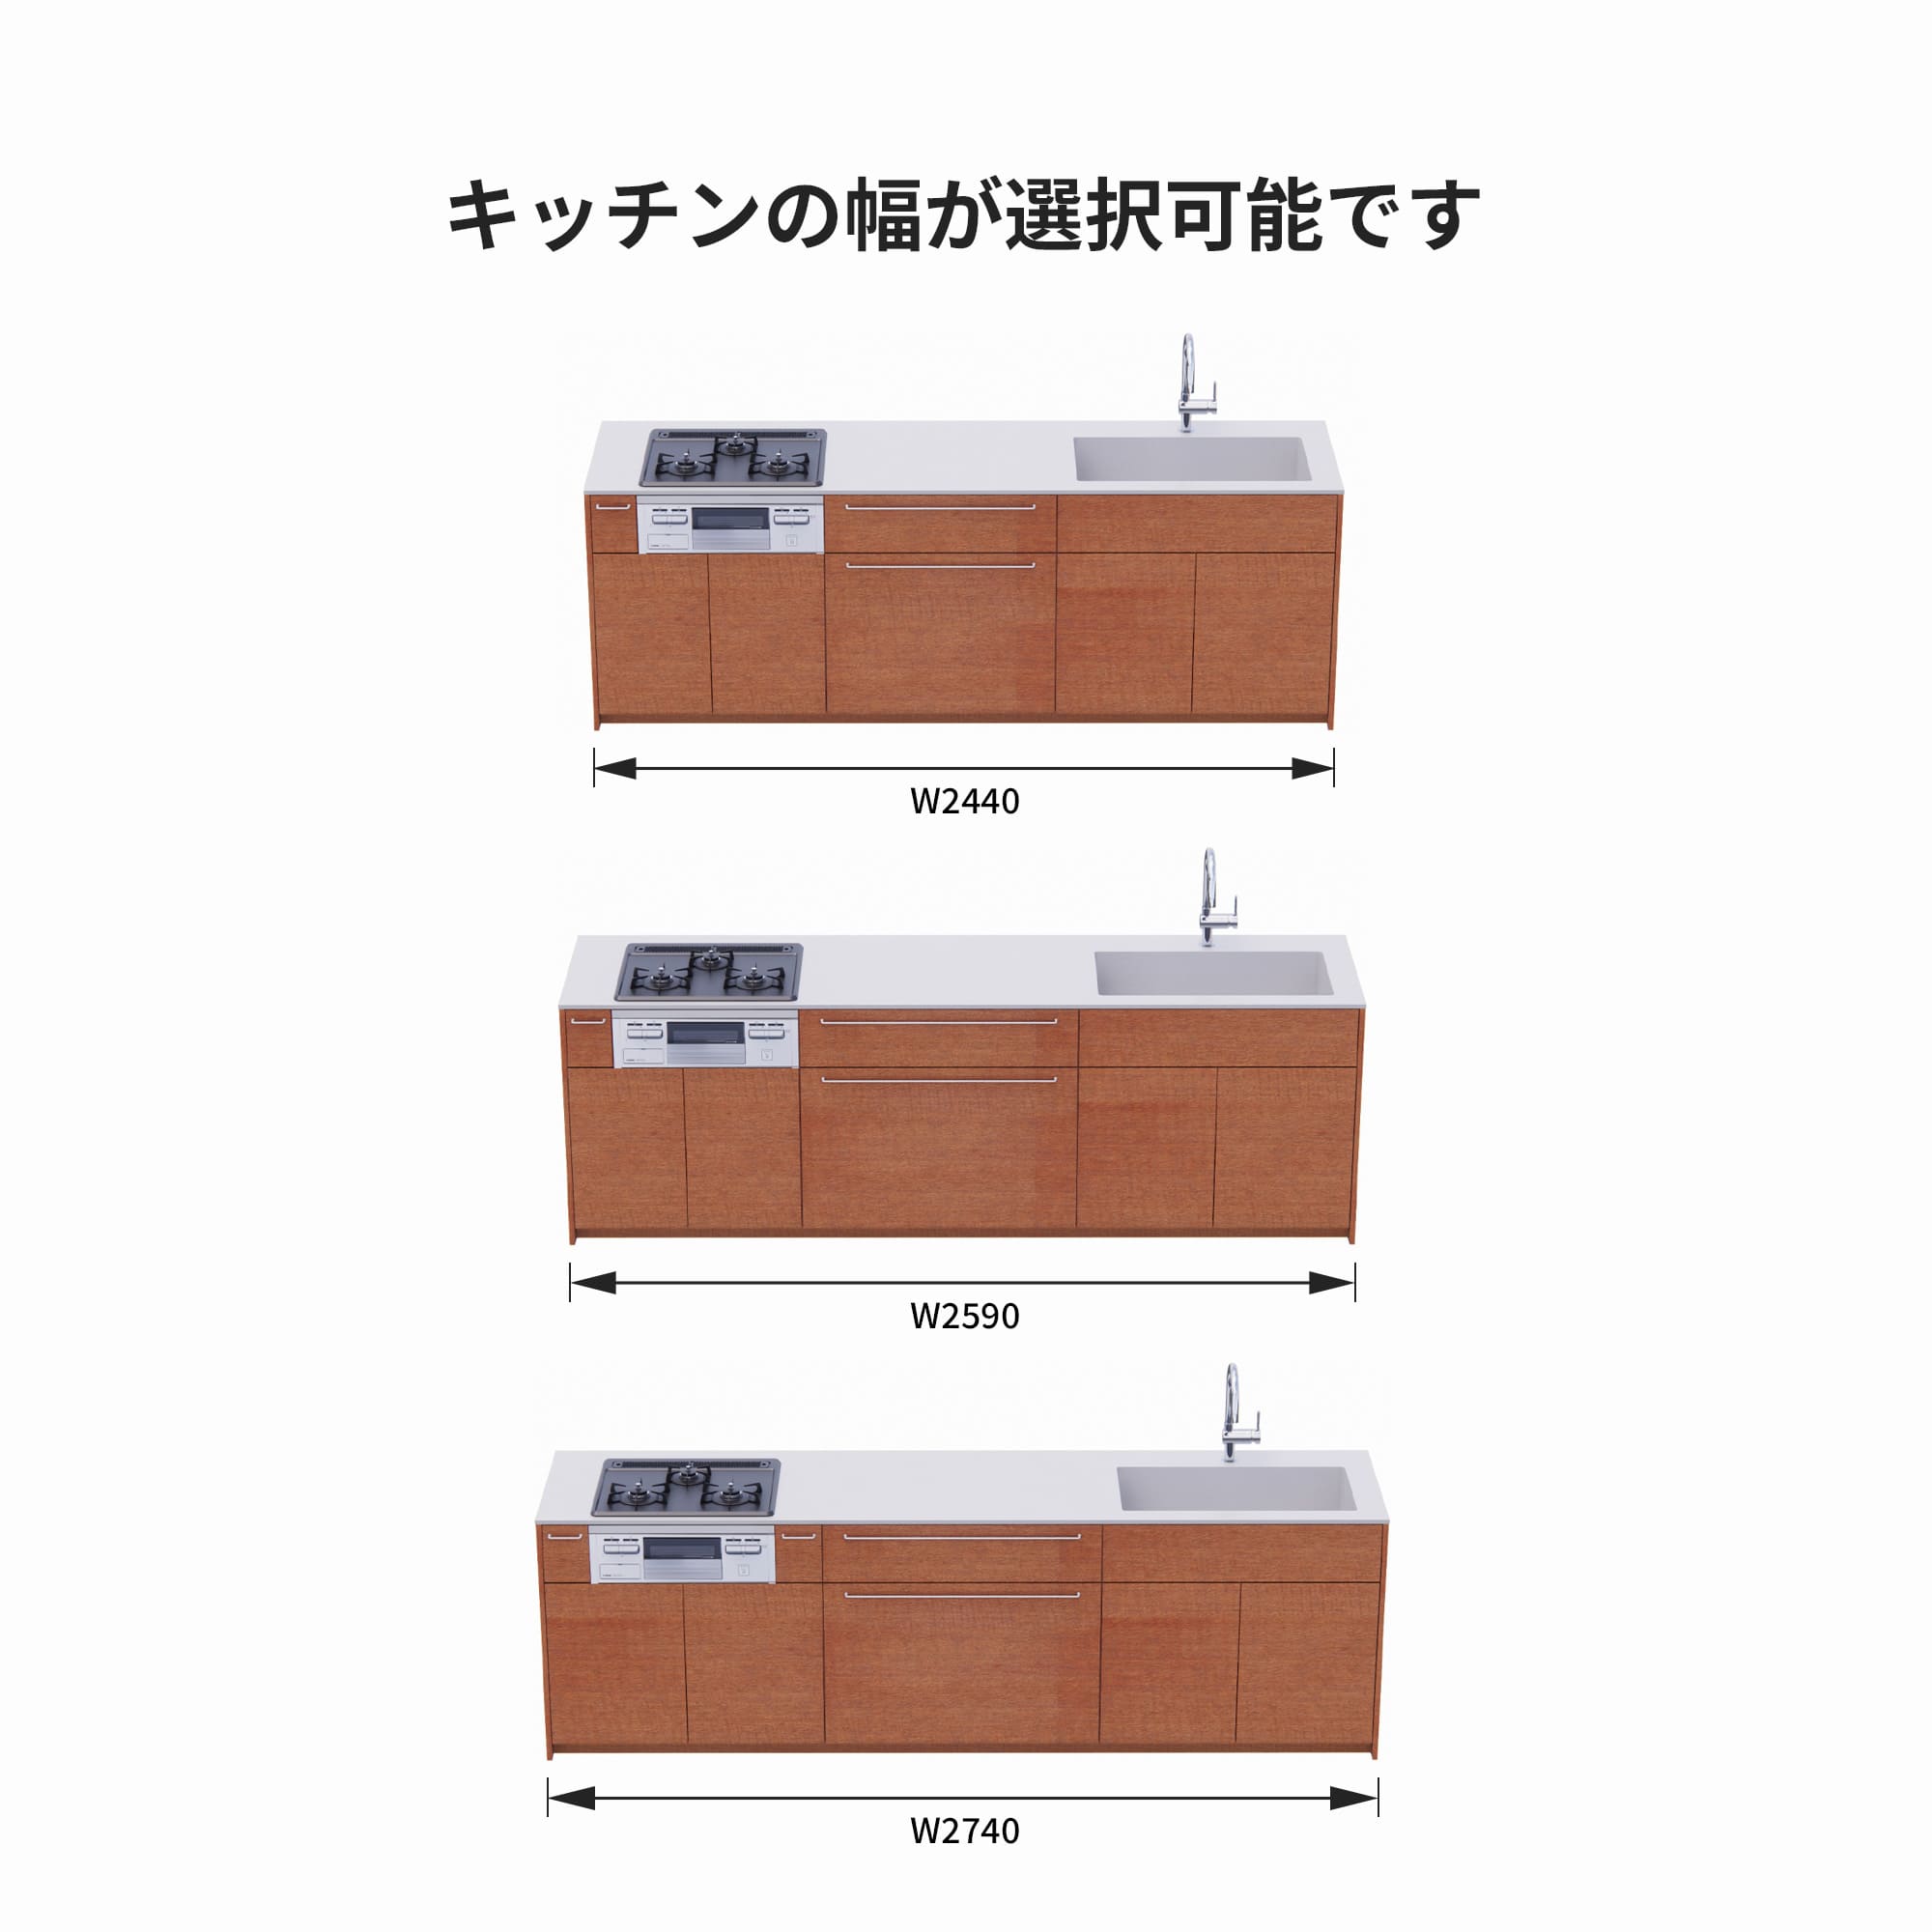 木製システムキッチン 壁付け型 W2440～2740・コンロあり / オーブンなし / 食洗機なし KB-KC022-23-G183